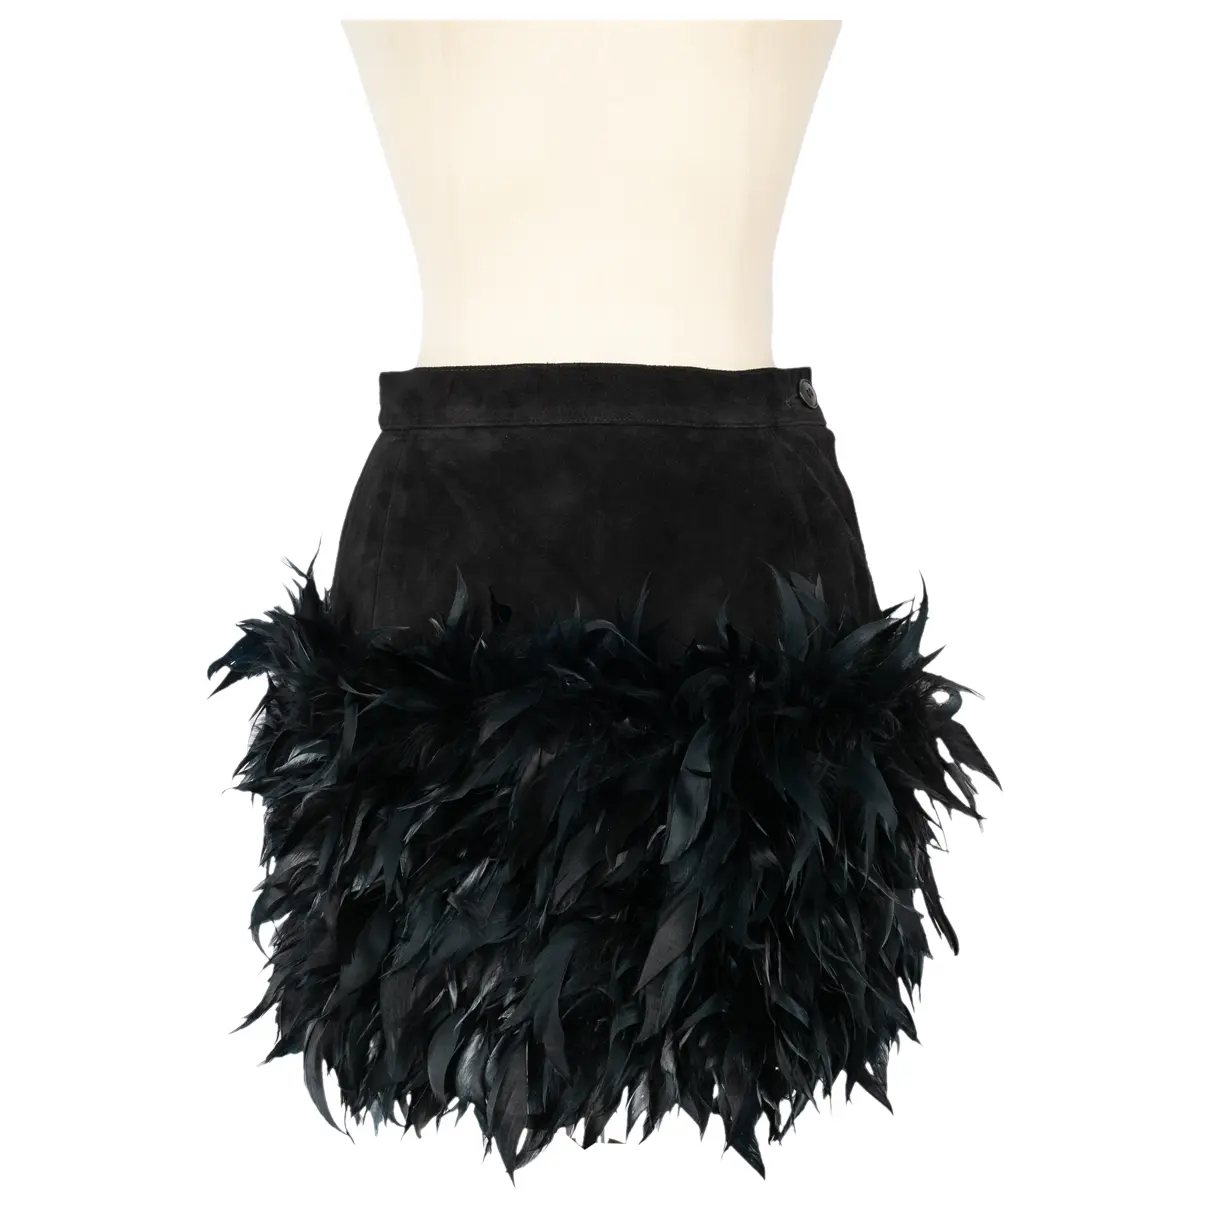 Leather mini skirt Yves Saint Laurent - Vintage